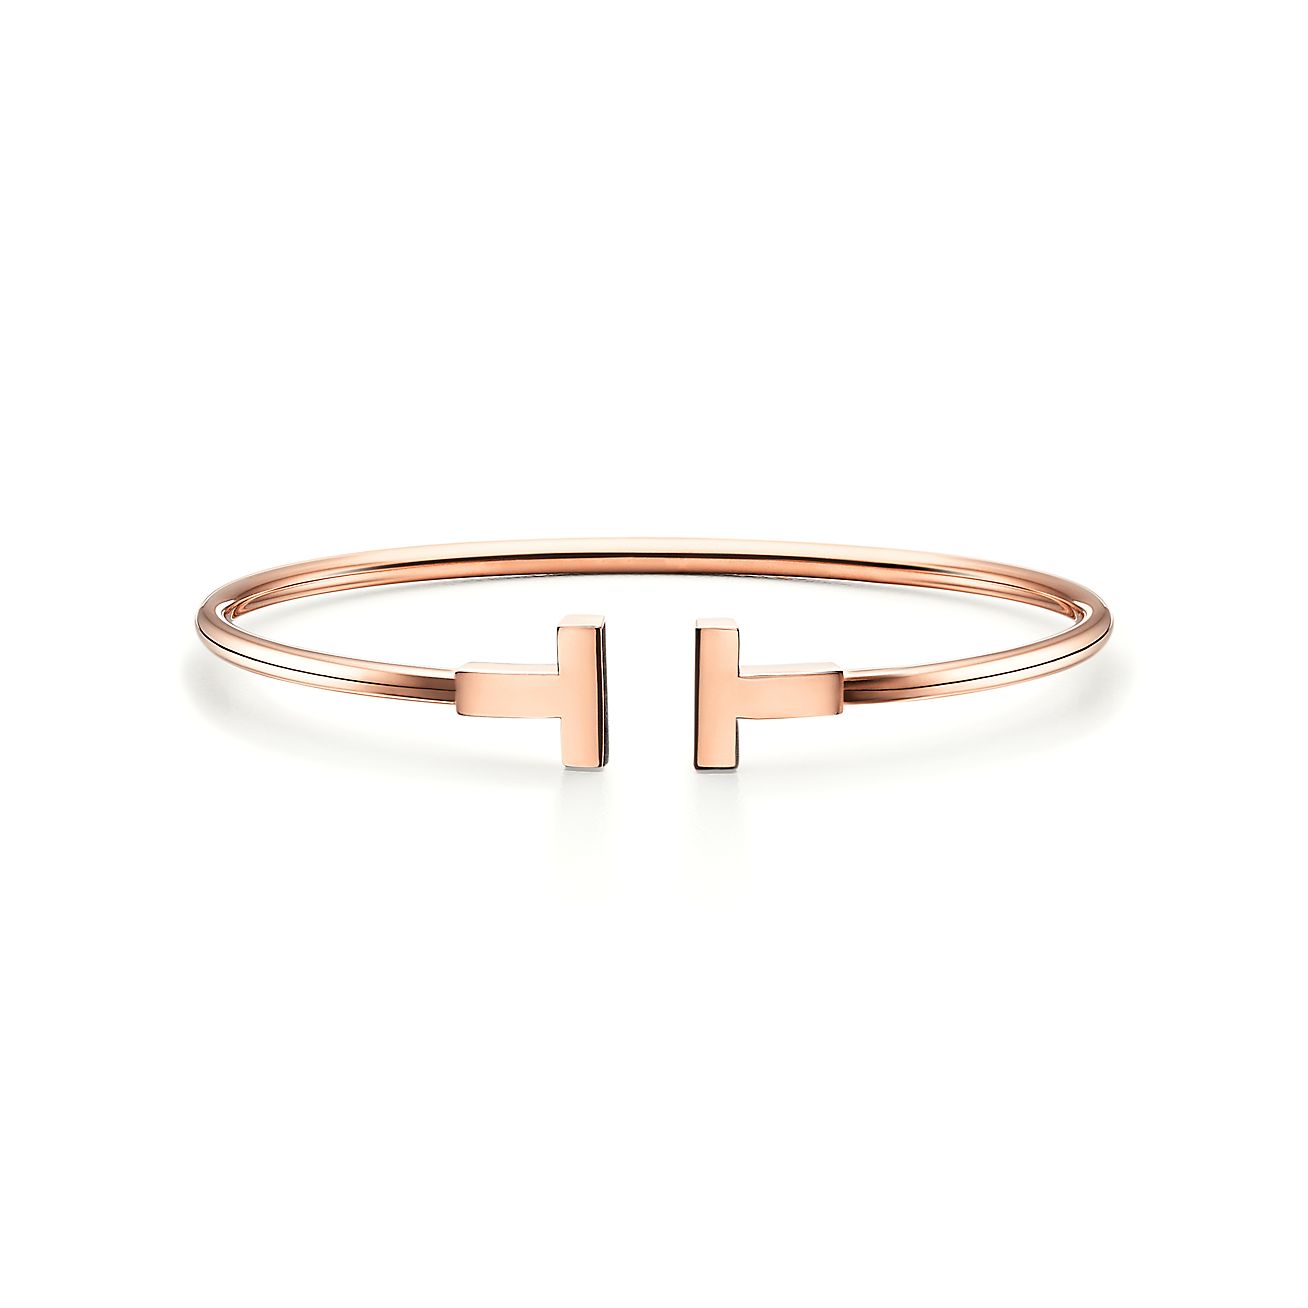 Tiffany T wire bracelet in 18k rose 